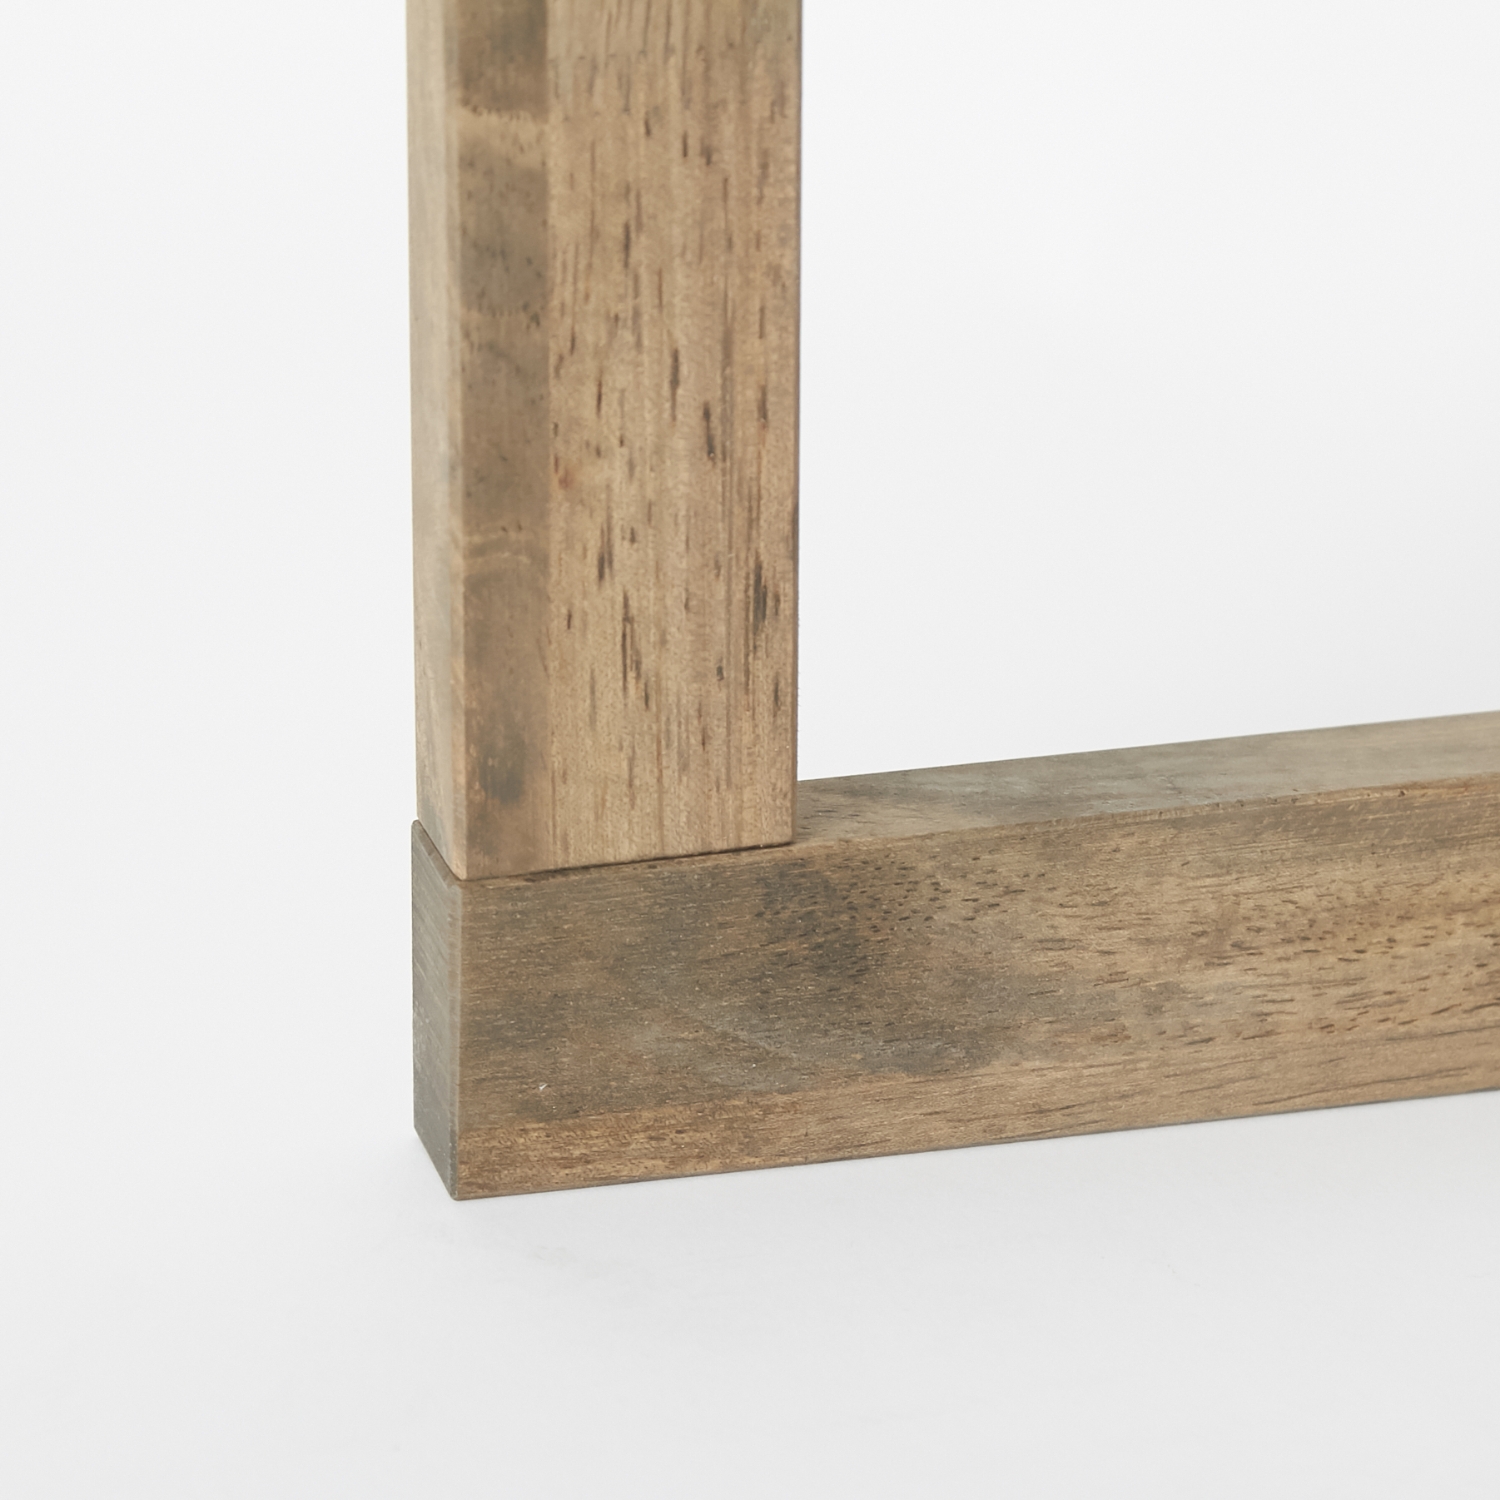 中居木工/折りたたみコンパクトテーブル